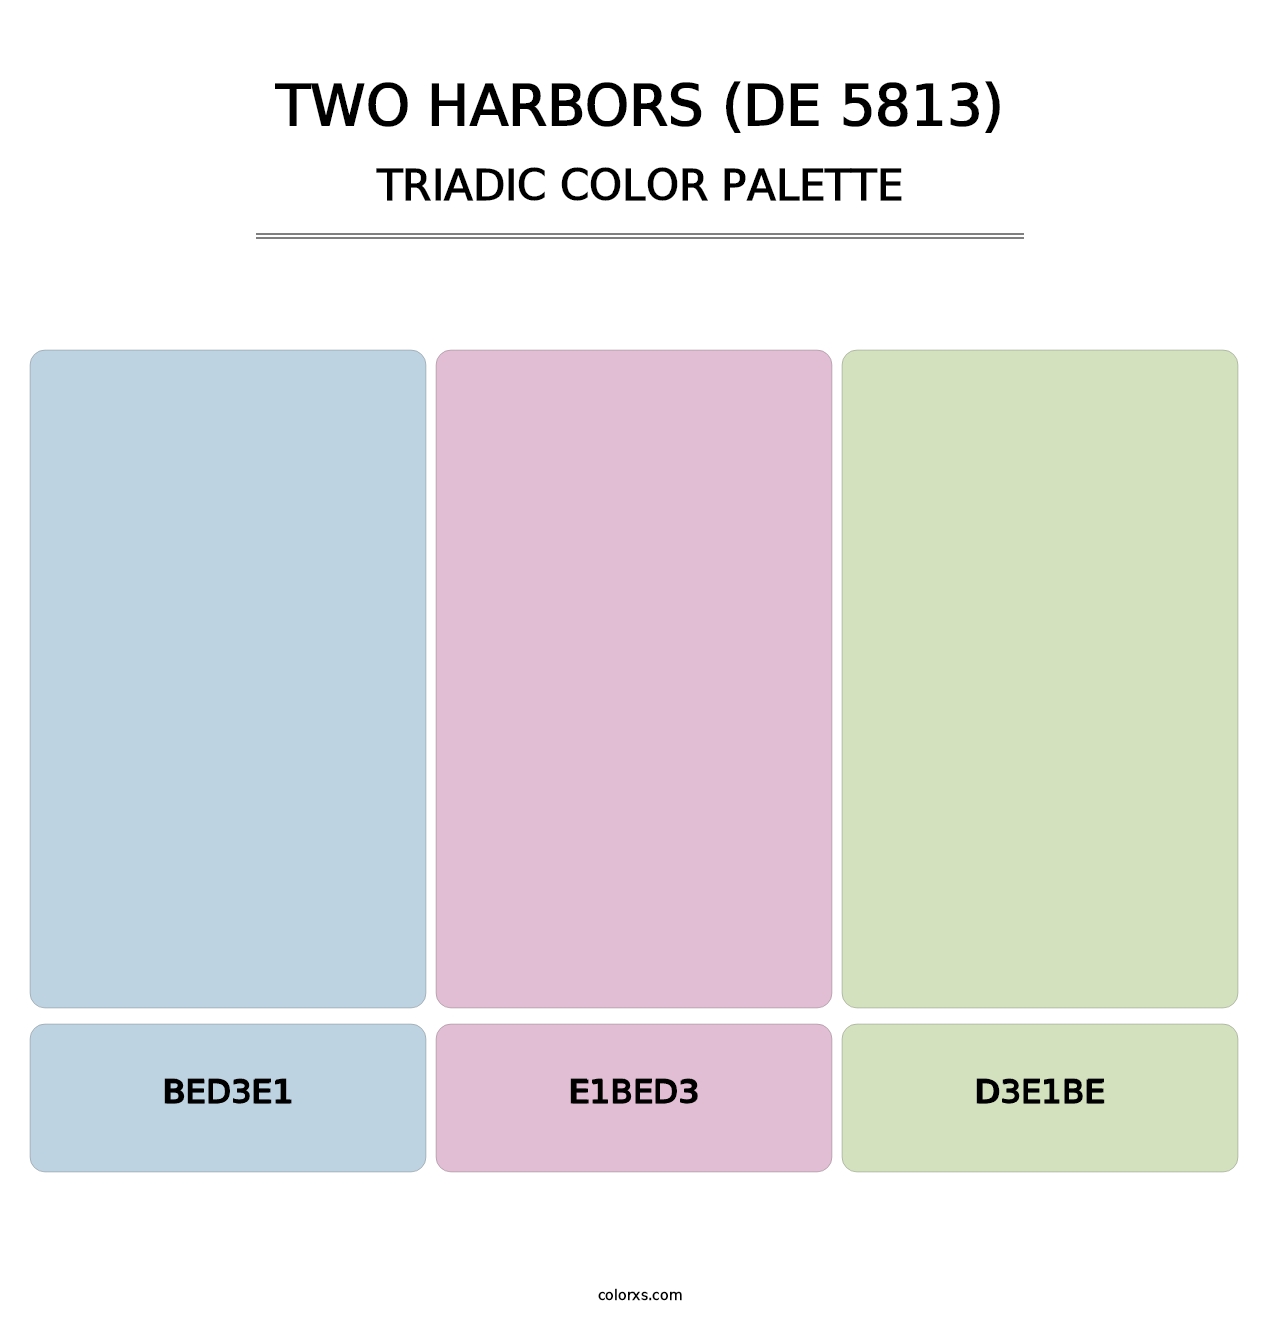 Two Harbors (DE 5813) - Triadic Color Palette